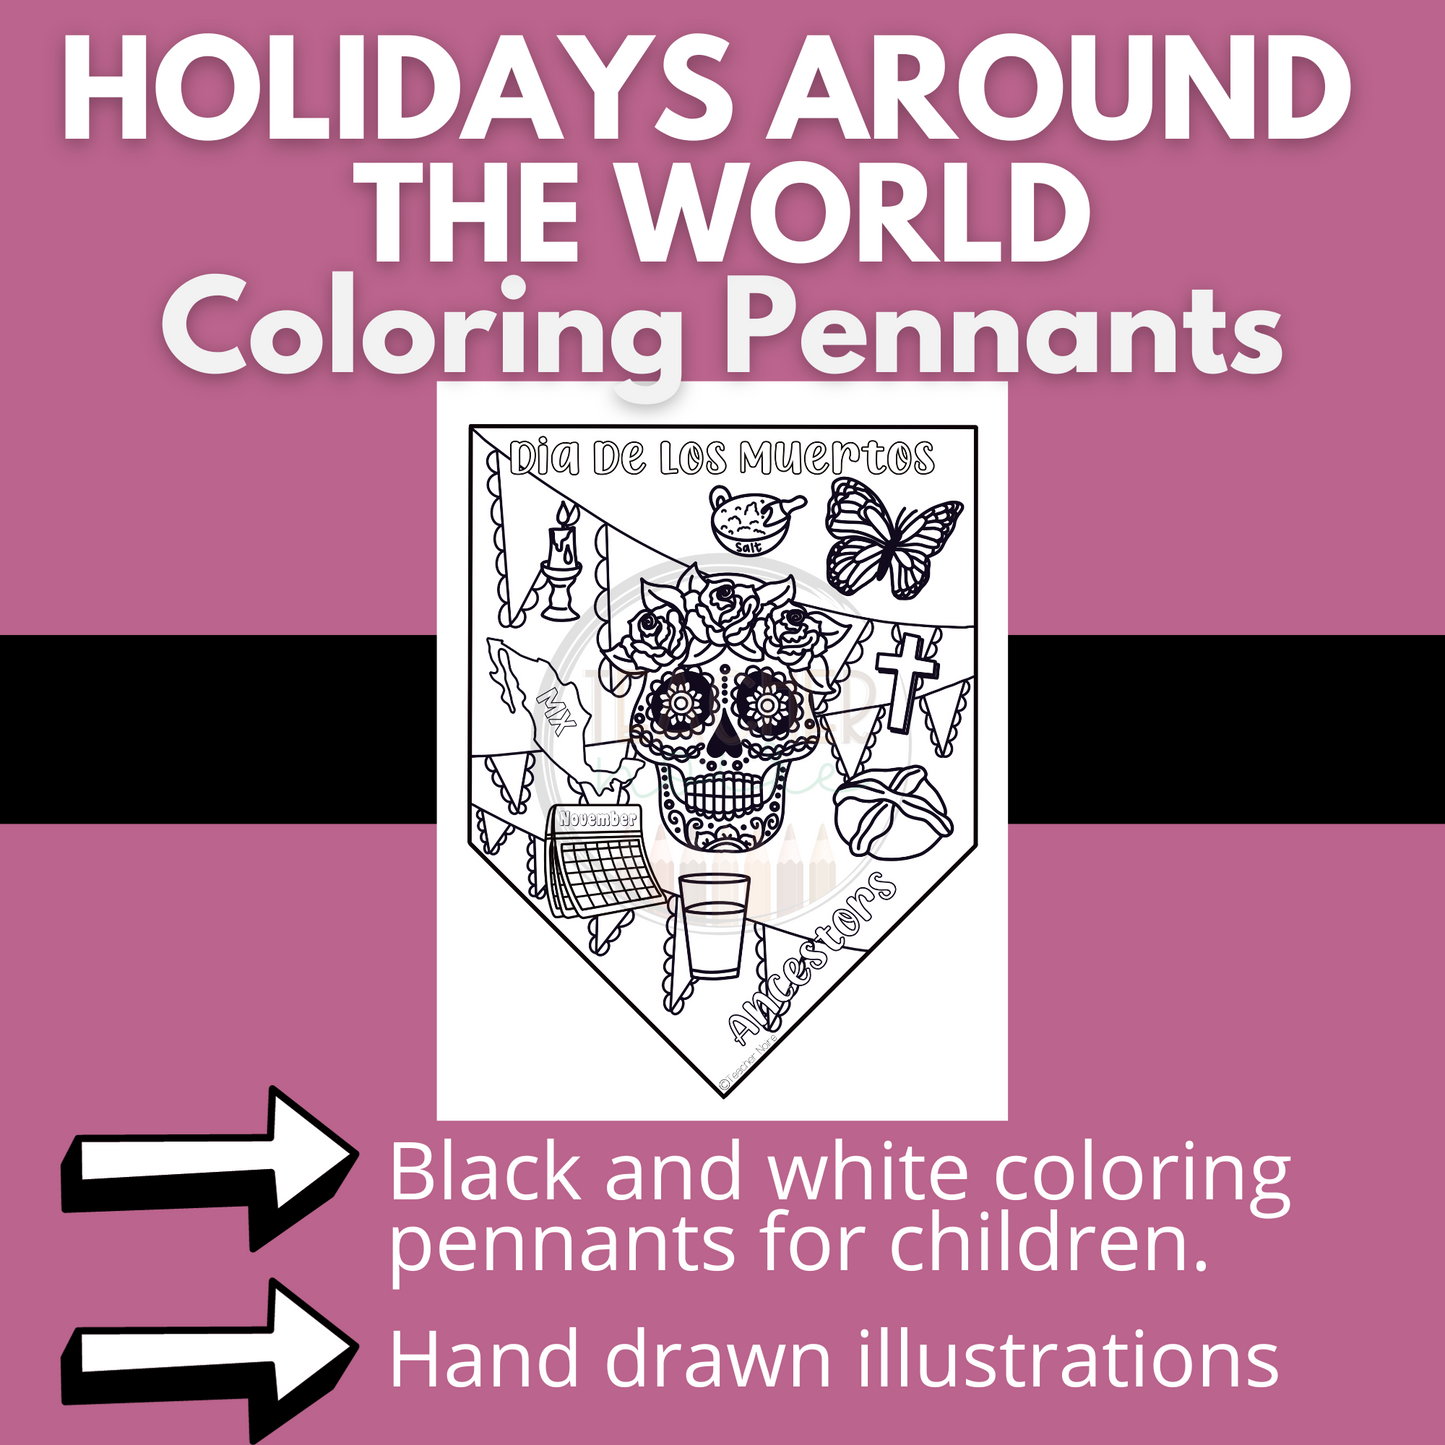 Dia de los Muertos | Day of the Dead Coloring Sheet